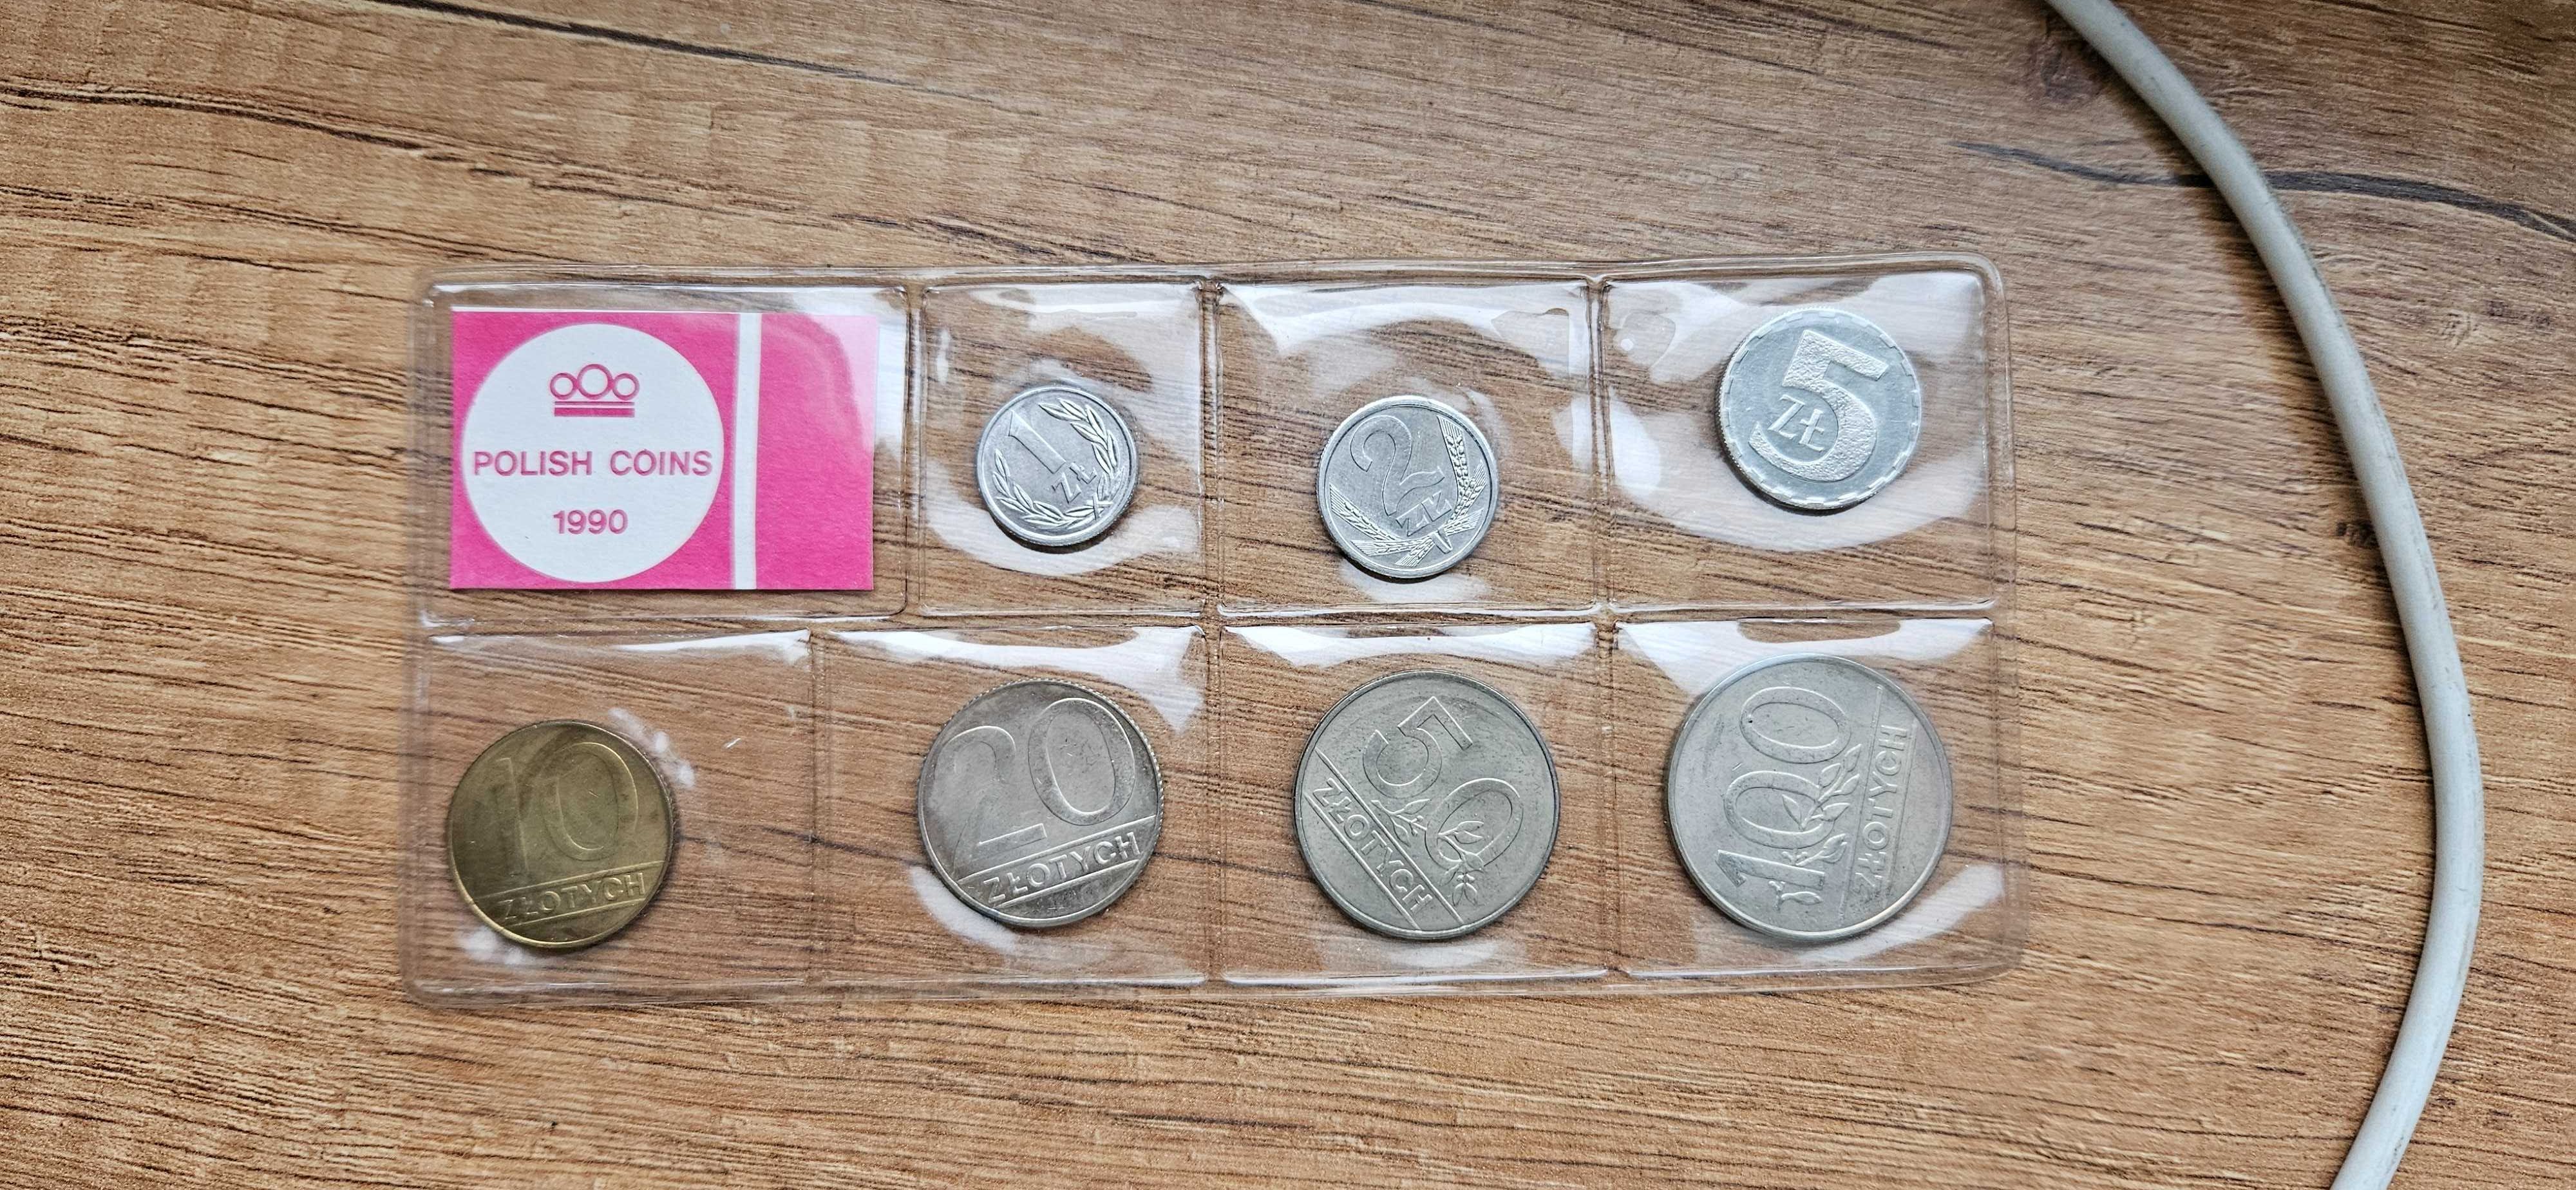 Zgrzewka polskich monet obiegowych